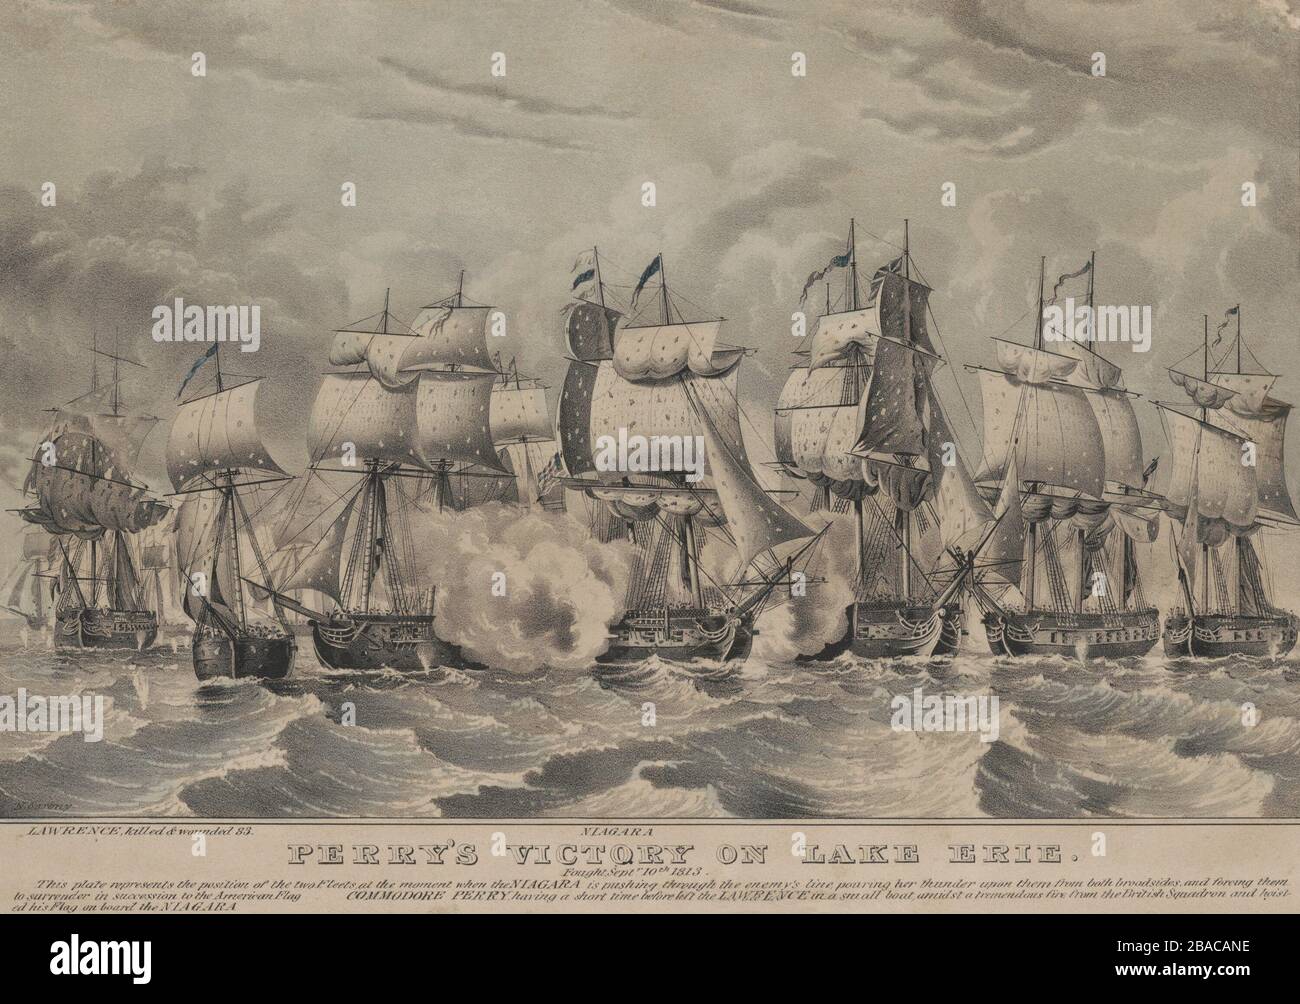 Guerra de 1812.la Batalla del Lago Erie, también conocida como Batalla de Put-in-Bay, 10 de septiembre de 1813, el USS Niagara (centro con bandera americana), el buque insignia del Commodore Oliver Perry empuja a través de la línea británica, entregando dos tablones. El escuadrón británico pronto se rindió (BSLOC 2019 6 100) Foto de stock